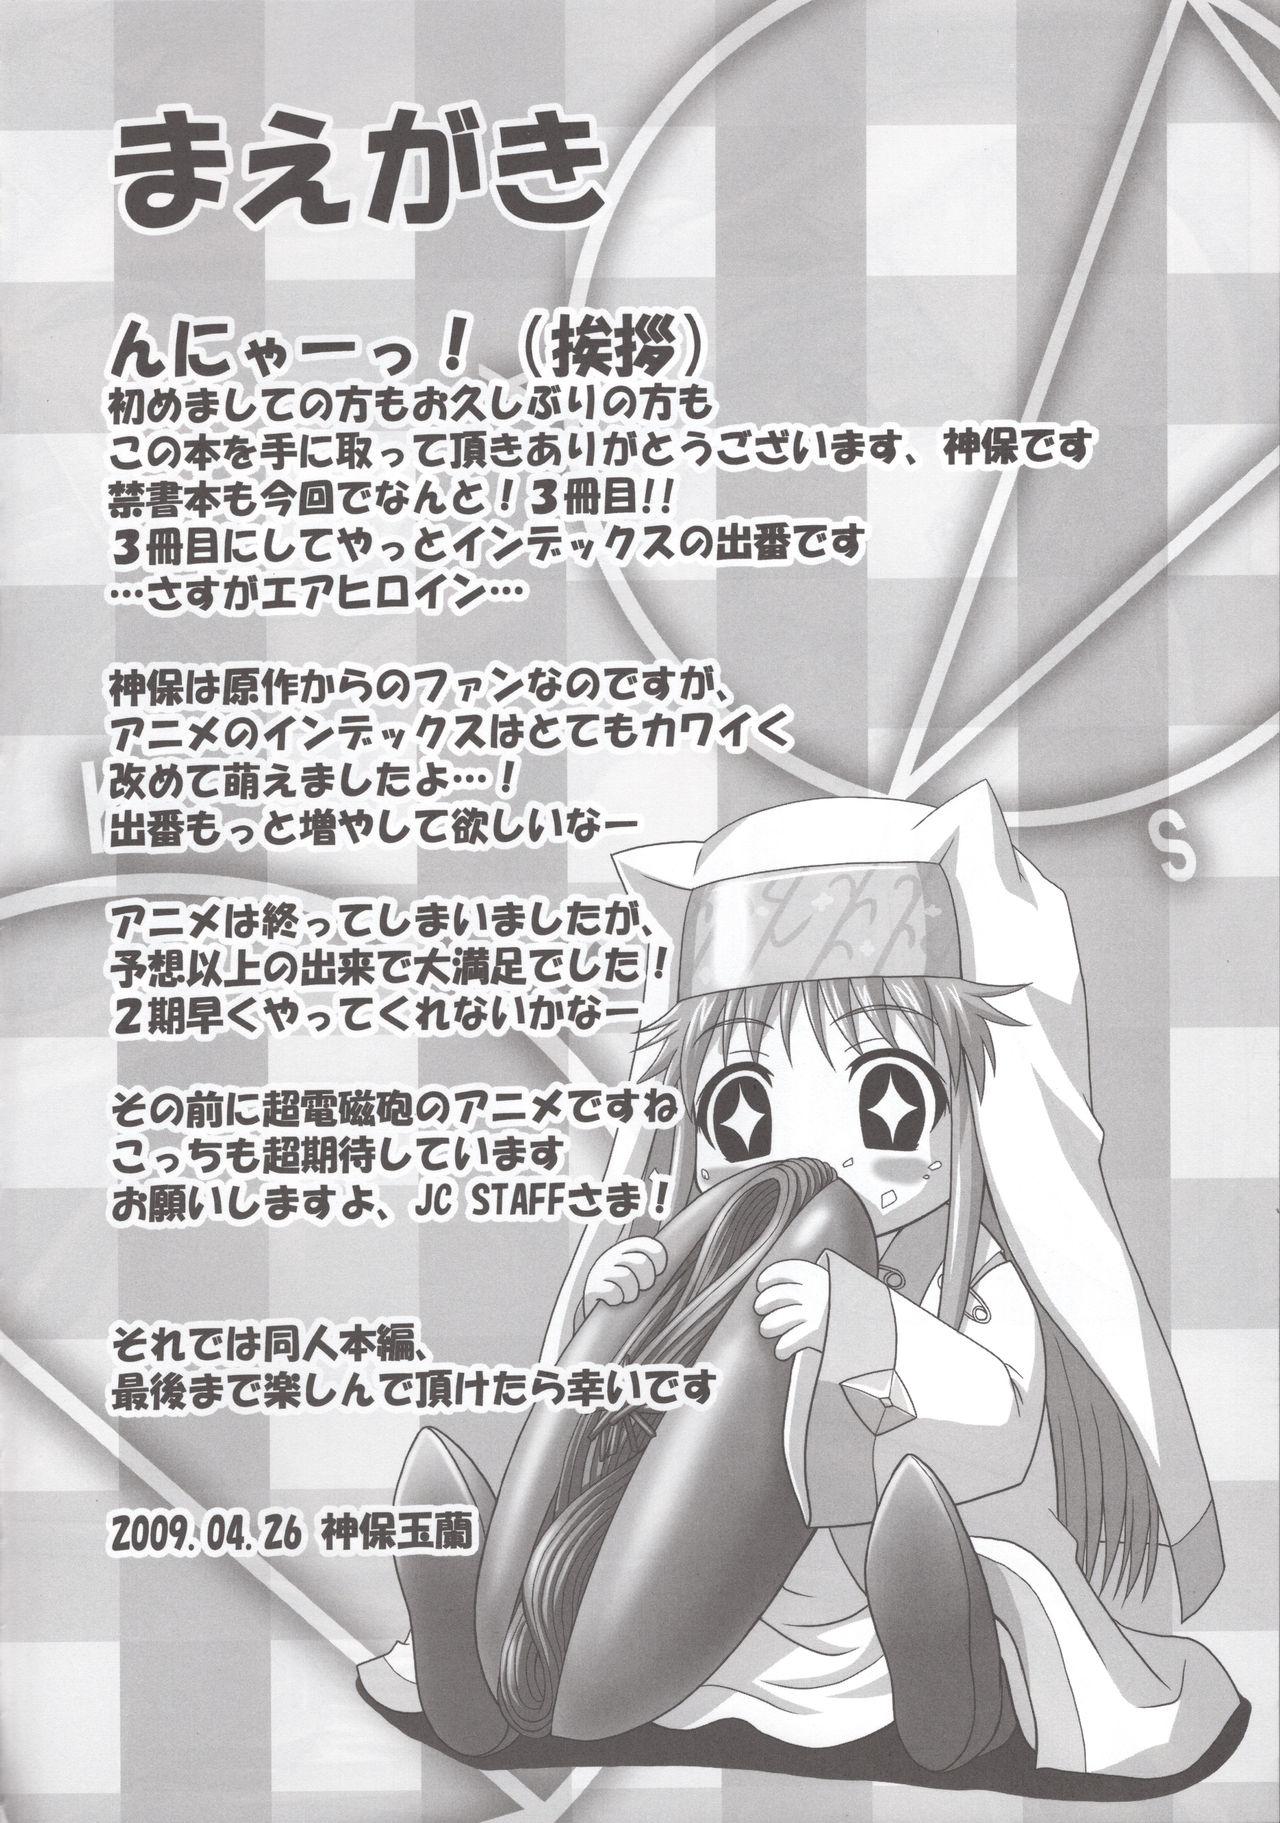 Machine Toaru Nichijou no 18 Kinsho Mokuroku - Toaru majutsu no index | a certain magical index Hiddencam - Page 3